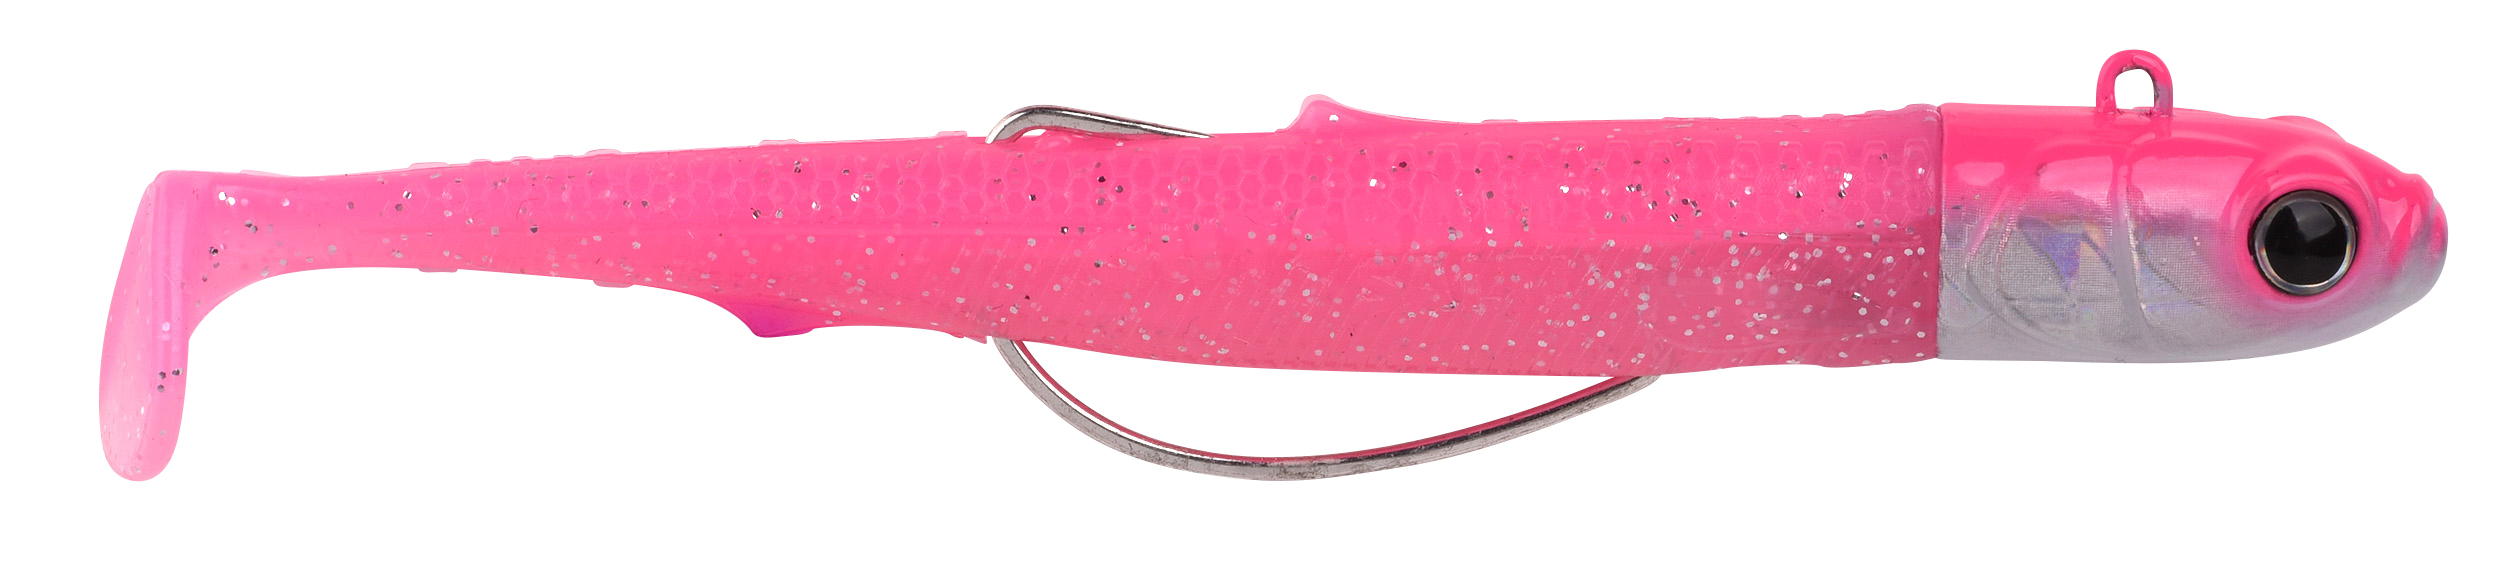 Spro Gutsbait Salt Sea Fish Softbait 8cm (15g) - Pink Minnow